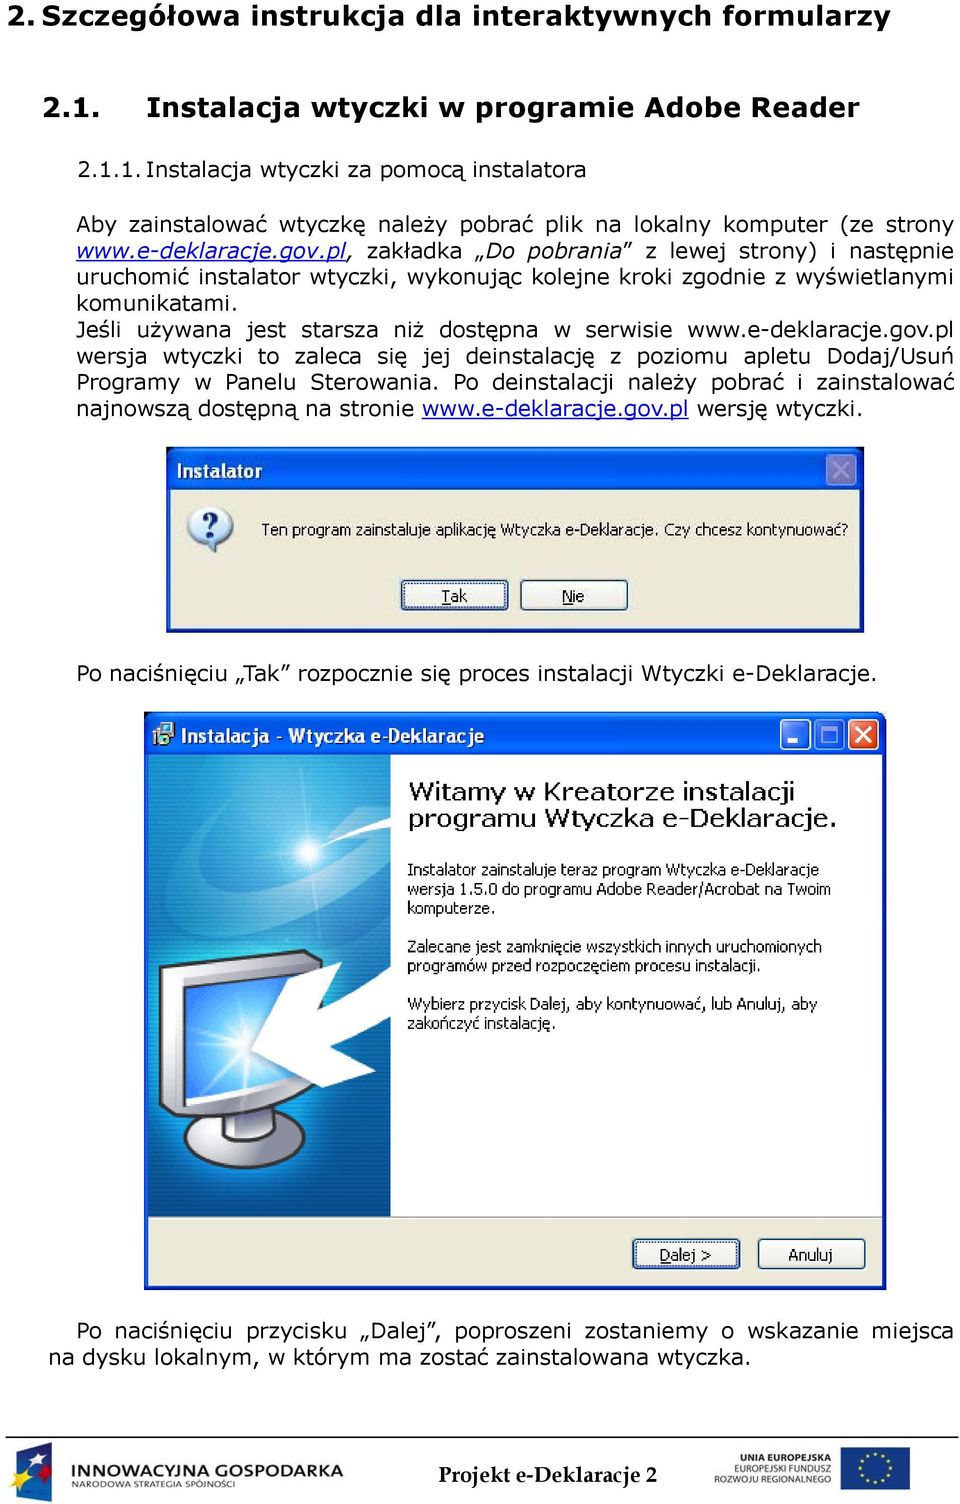 Jeśli używana jest starsza niż dostępna w serwisie www.e-deklaracje.gov.pl wersja wtyczki to zaleca się jej deinstalację z poziomu apletu Dodaj/Usuń Programy w Panelu Sterowania.